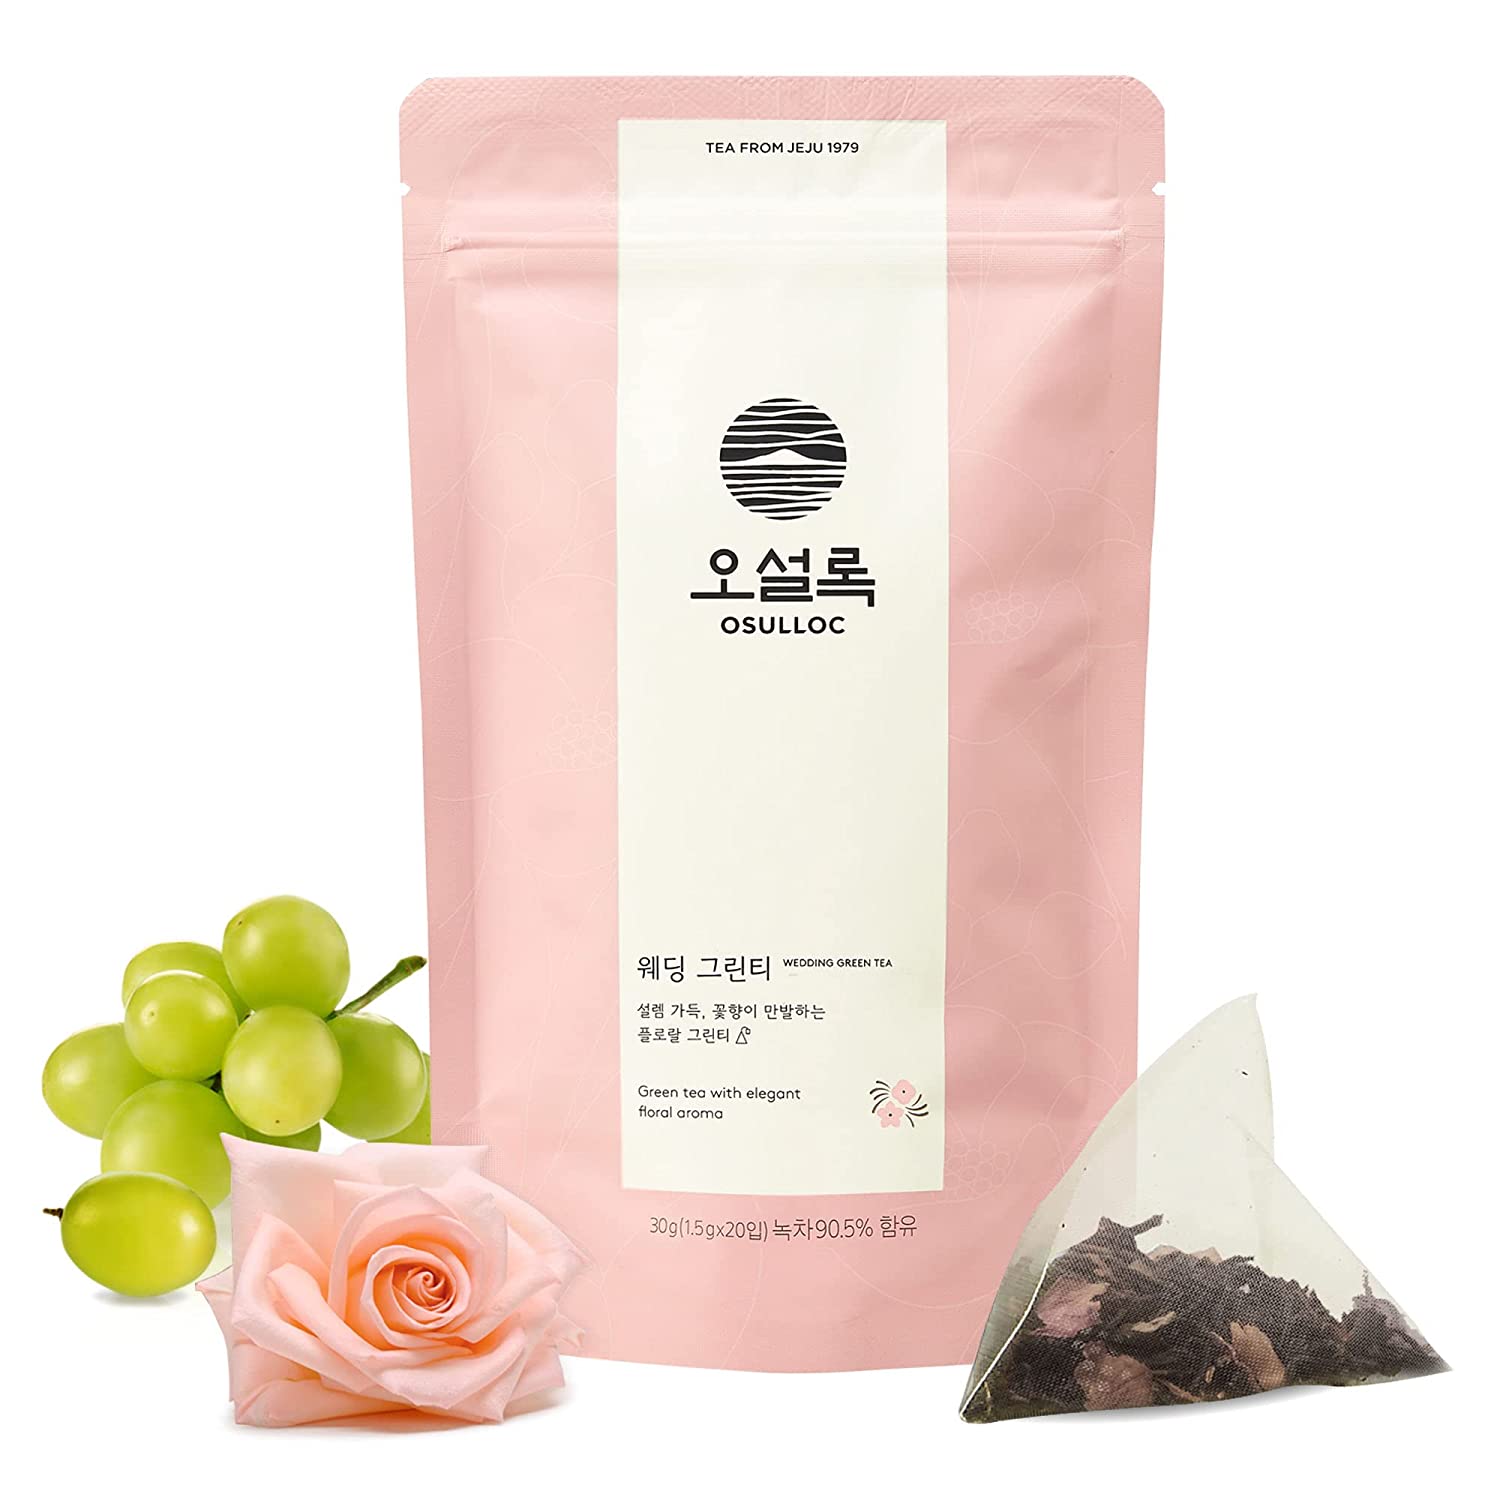 [오설록 웨딩 그린티 ]OSULLOC Wedding Green Tea (Green tea with elegant floral aroma )| Korean Premium Blended Tea Bag | Sweet Fruit Tea | 10 or 20 Packs